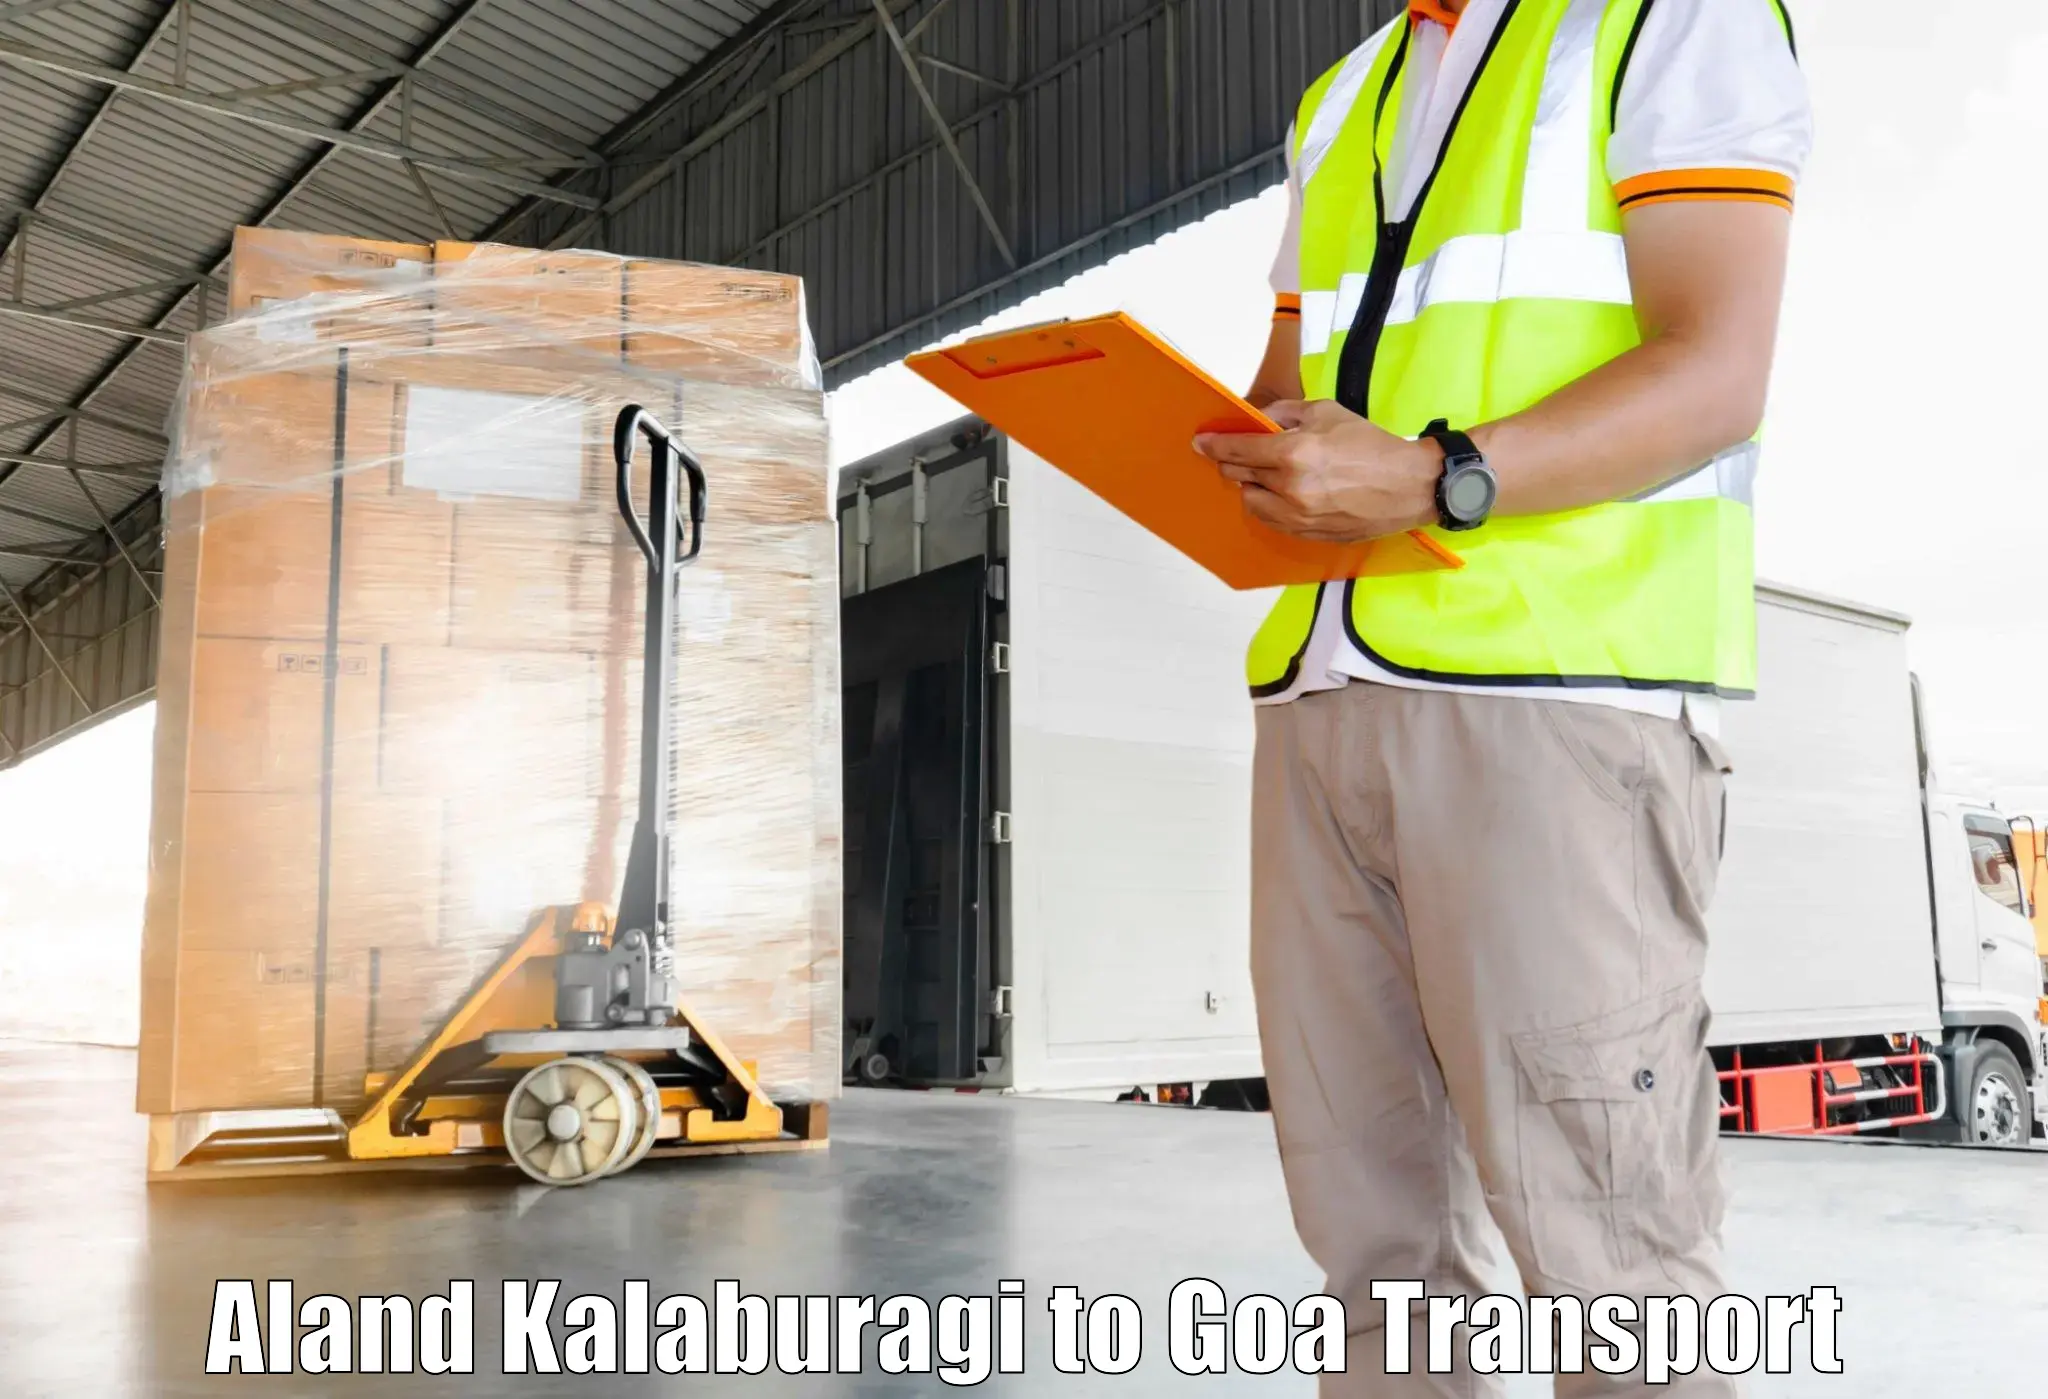 Container transport service Aland Kalaburagi to Panaji